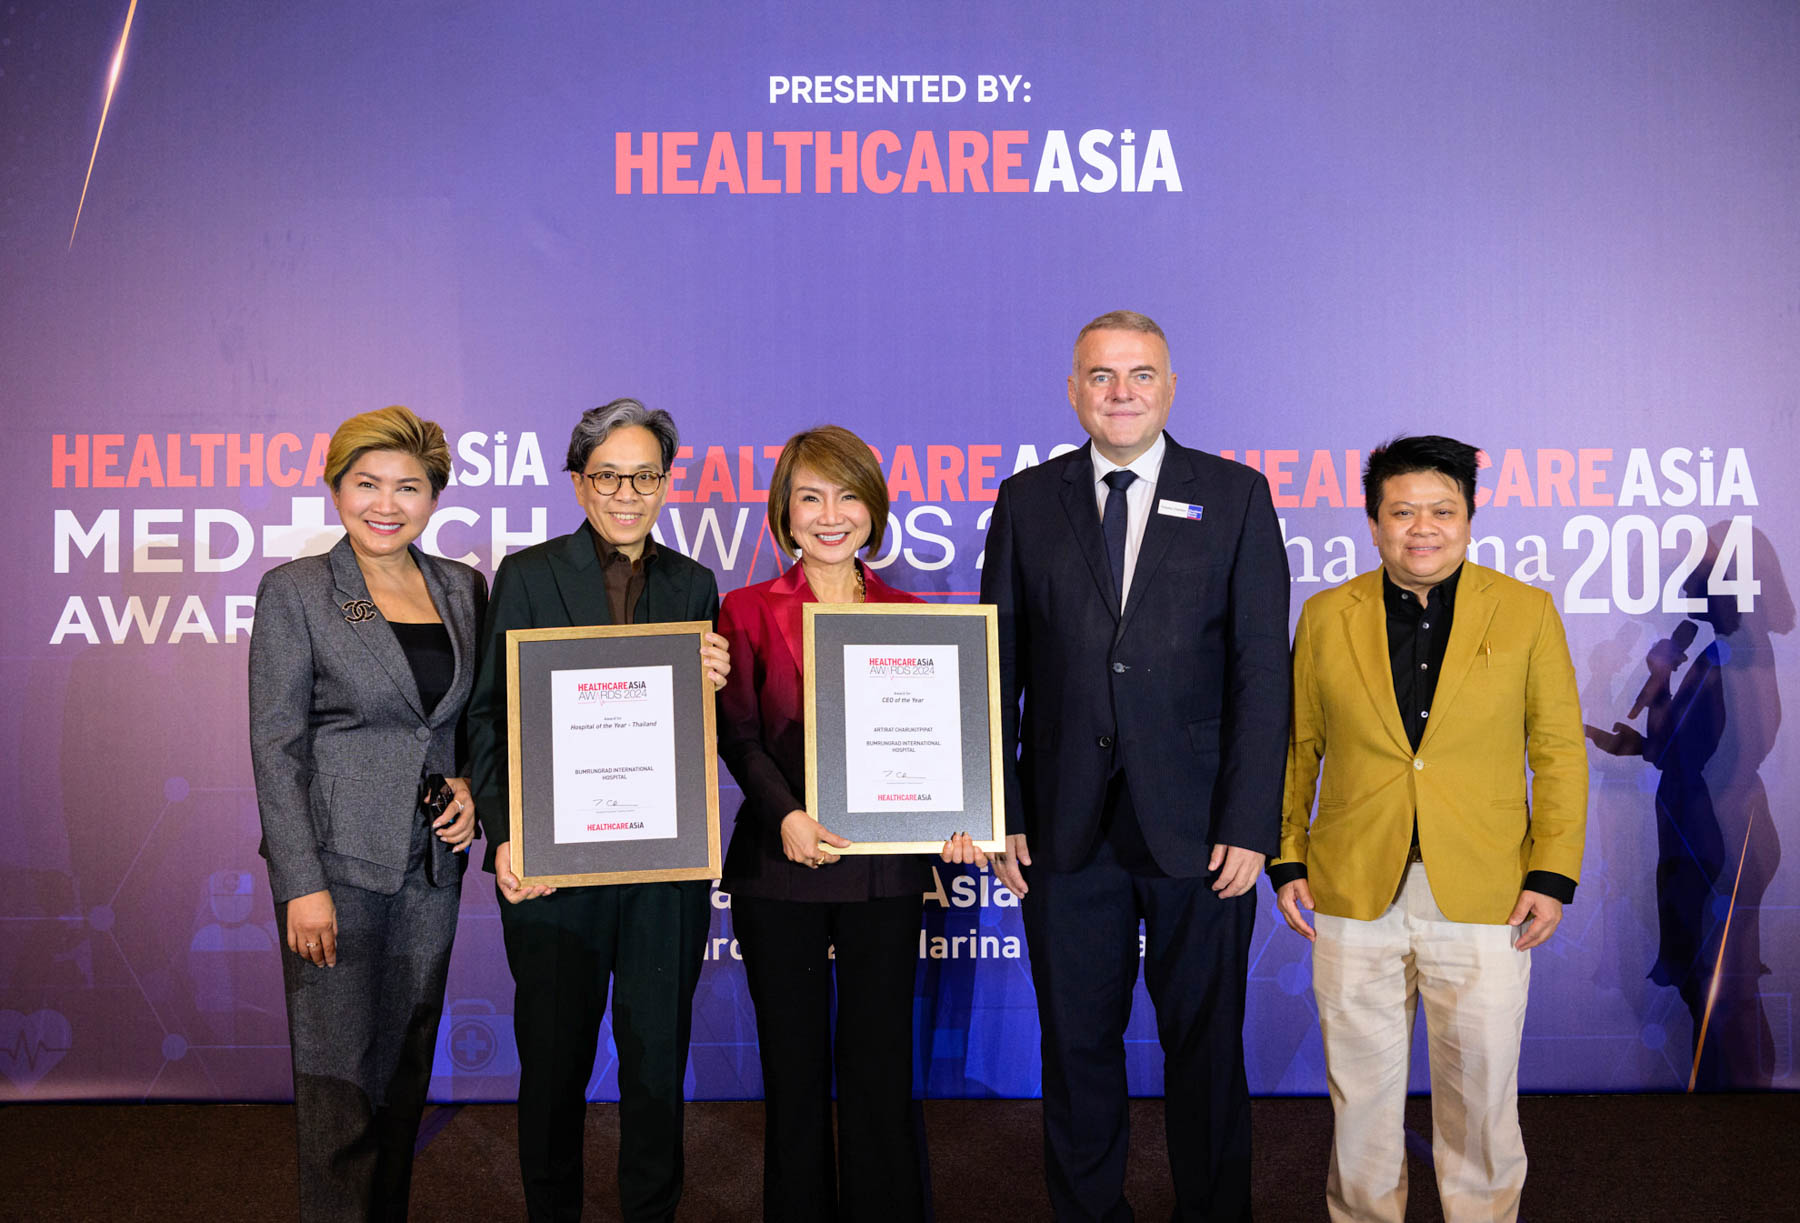 บำรุงราษฎร์ คว้า 2 รางวัลใหญ่ Hospital of the Year และ CEO of the Year ในงาน Healthcare Asia Awards 2024